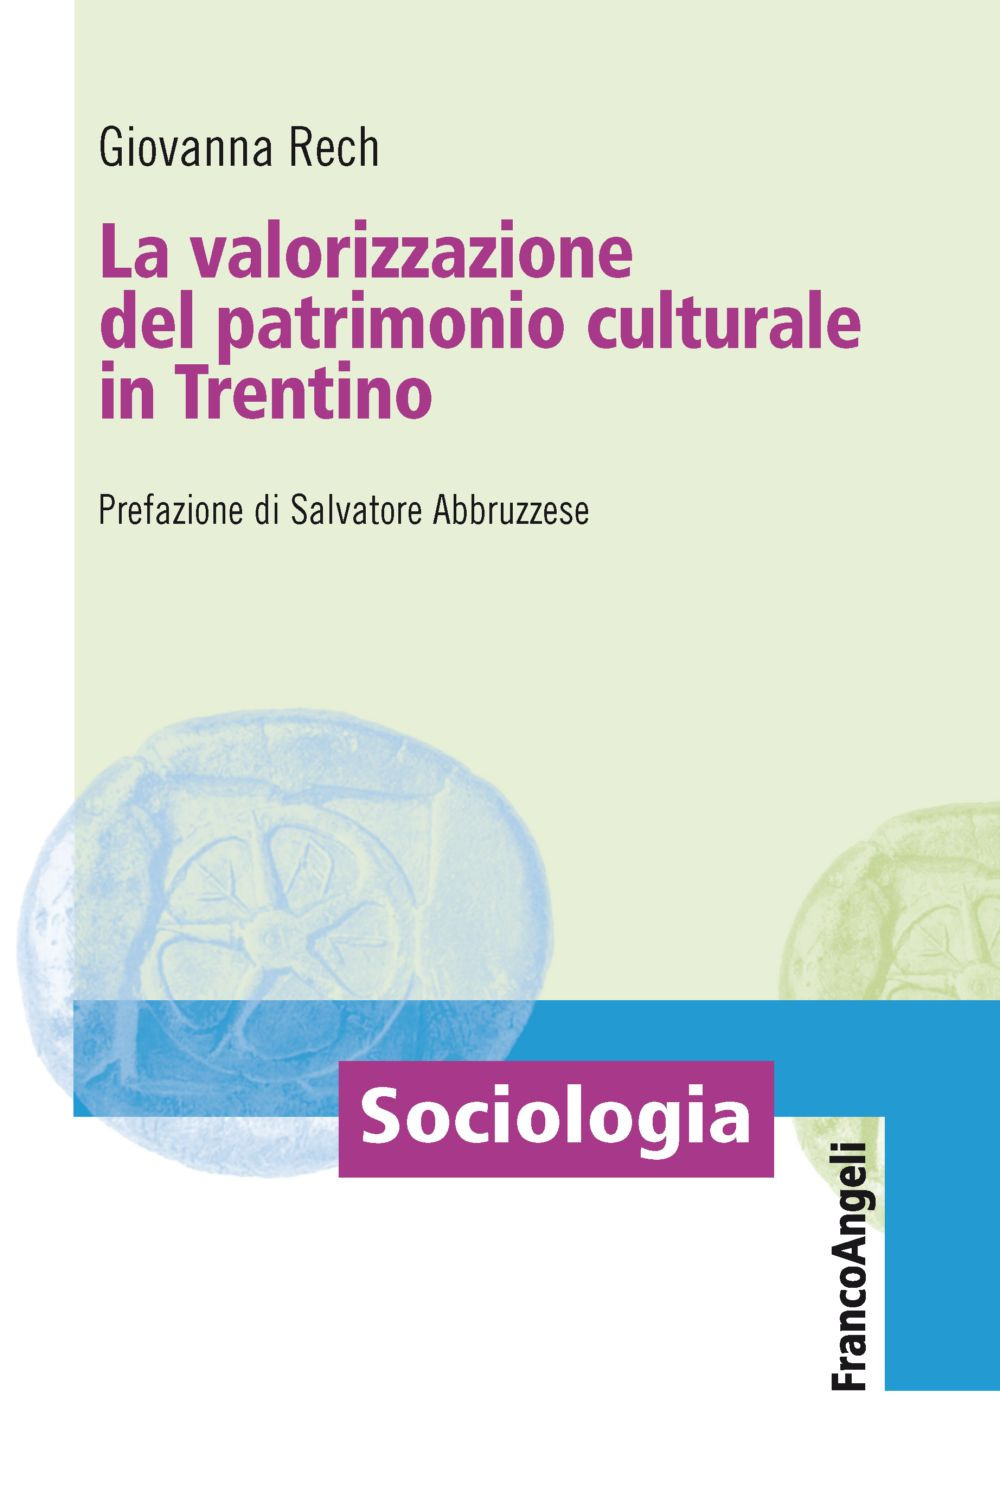 Image of La valorizzazione del patrimonio culturale in Trentino